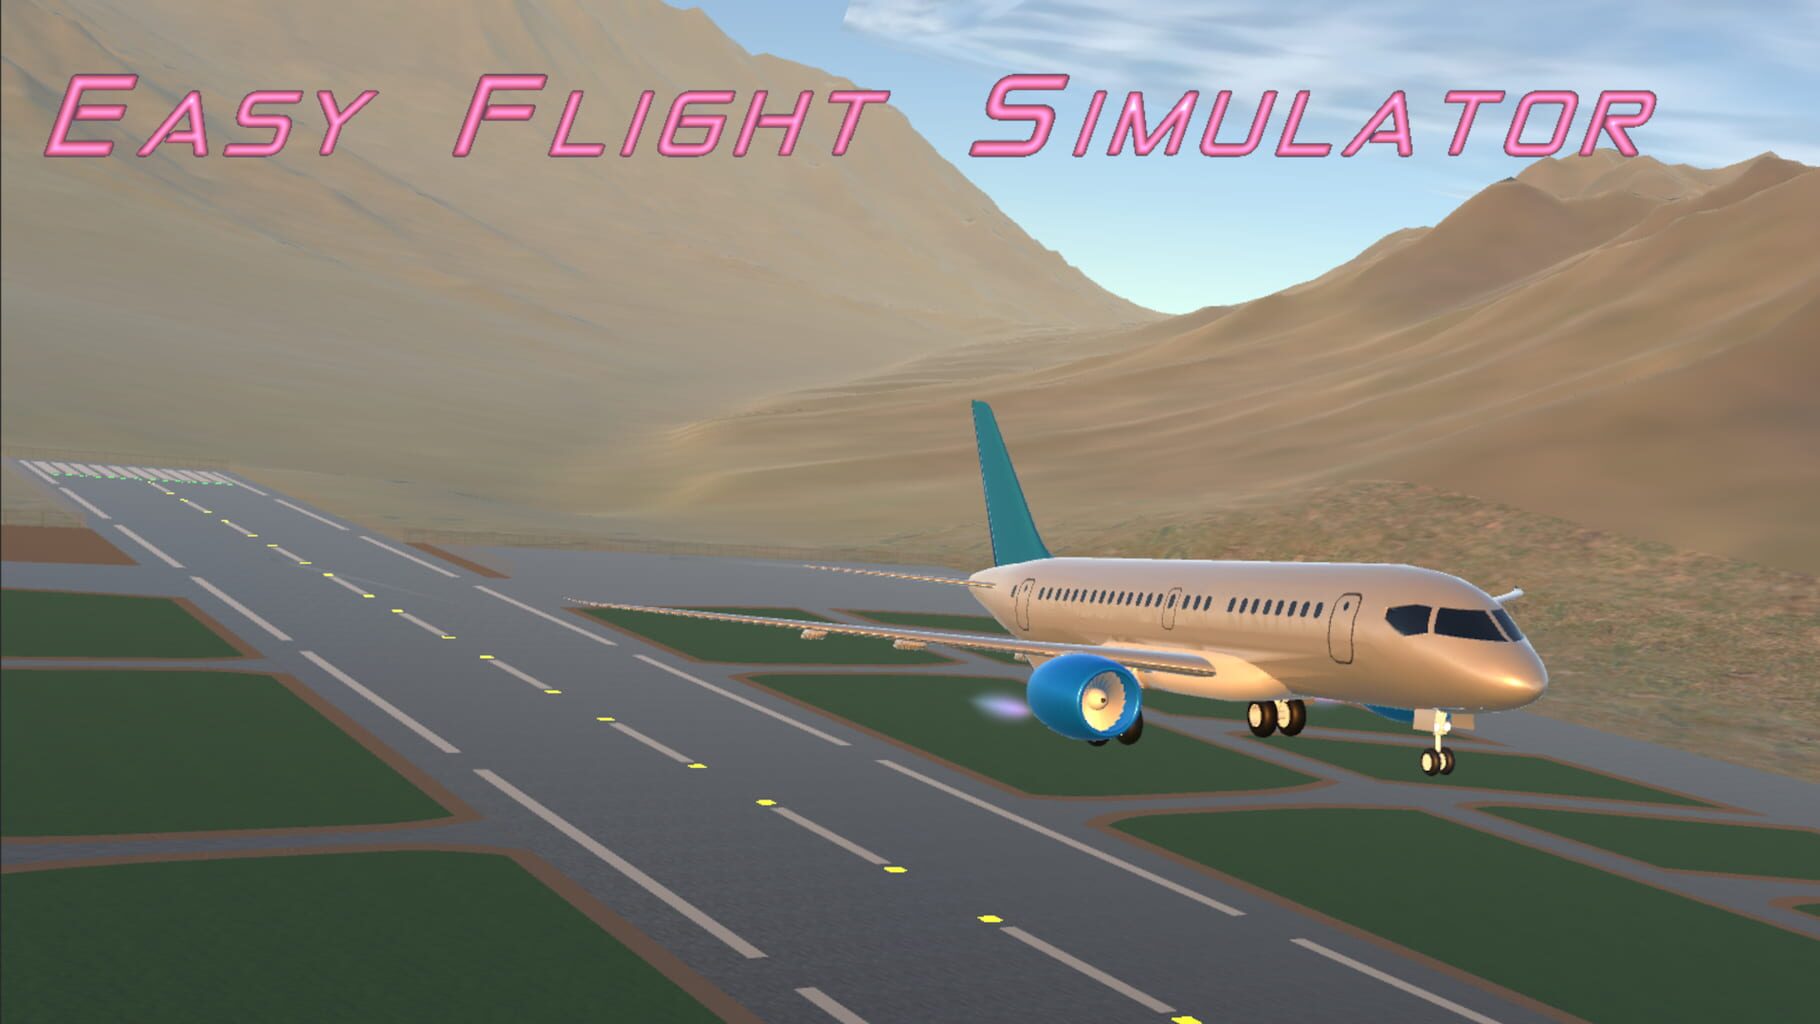 Easy Flight Simulator artwork